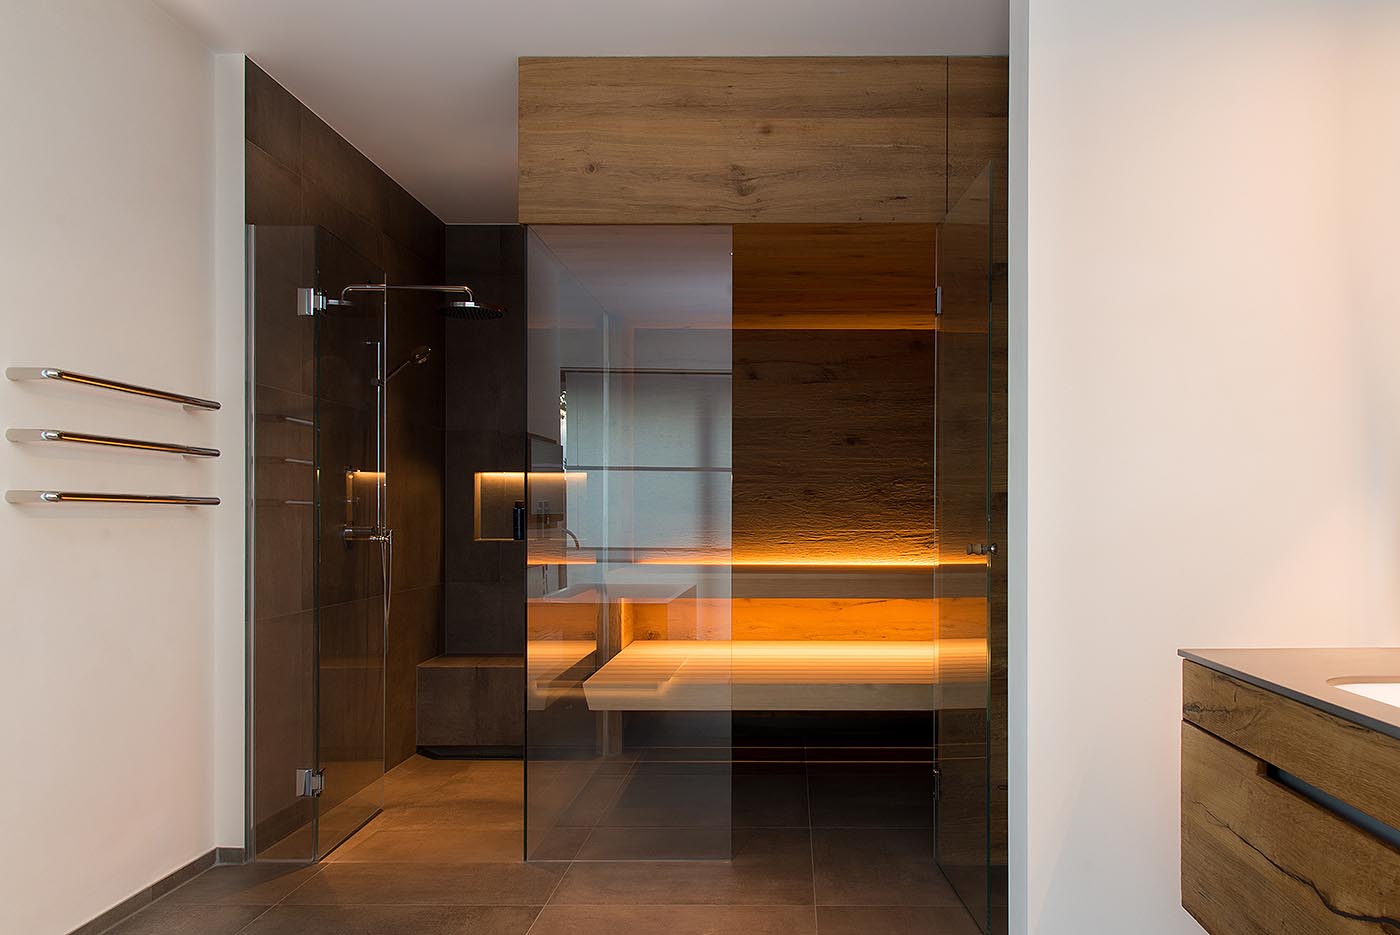 Moderne Ecksauna für Zuhause im Bad mit Glasecke und direkt anschließender Dusche.